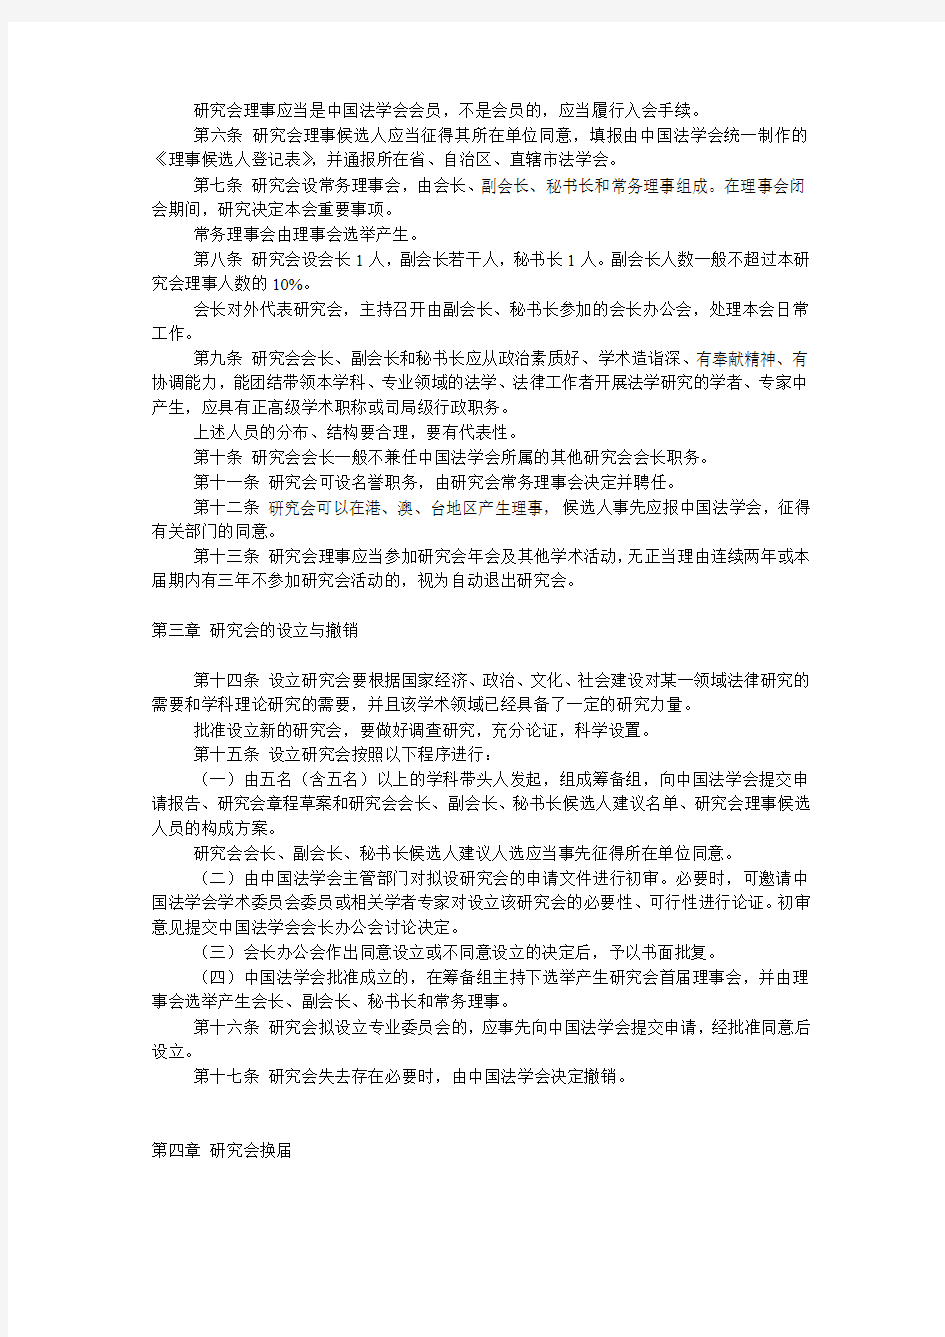 关于印发中国法学会研究会管理办法的通知